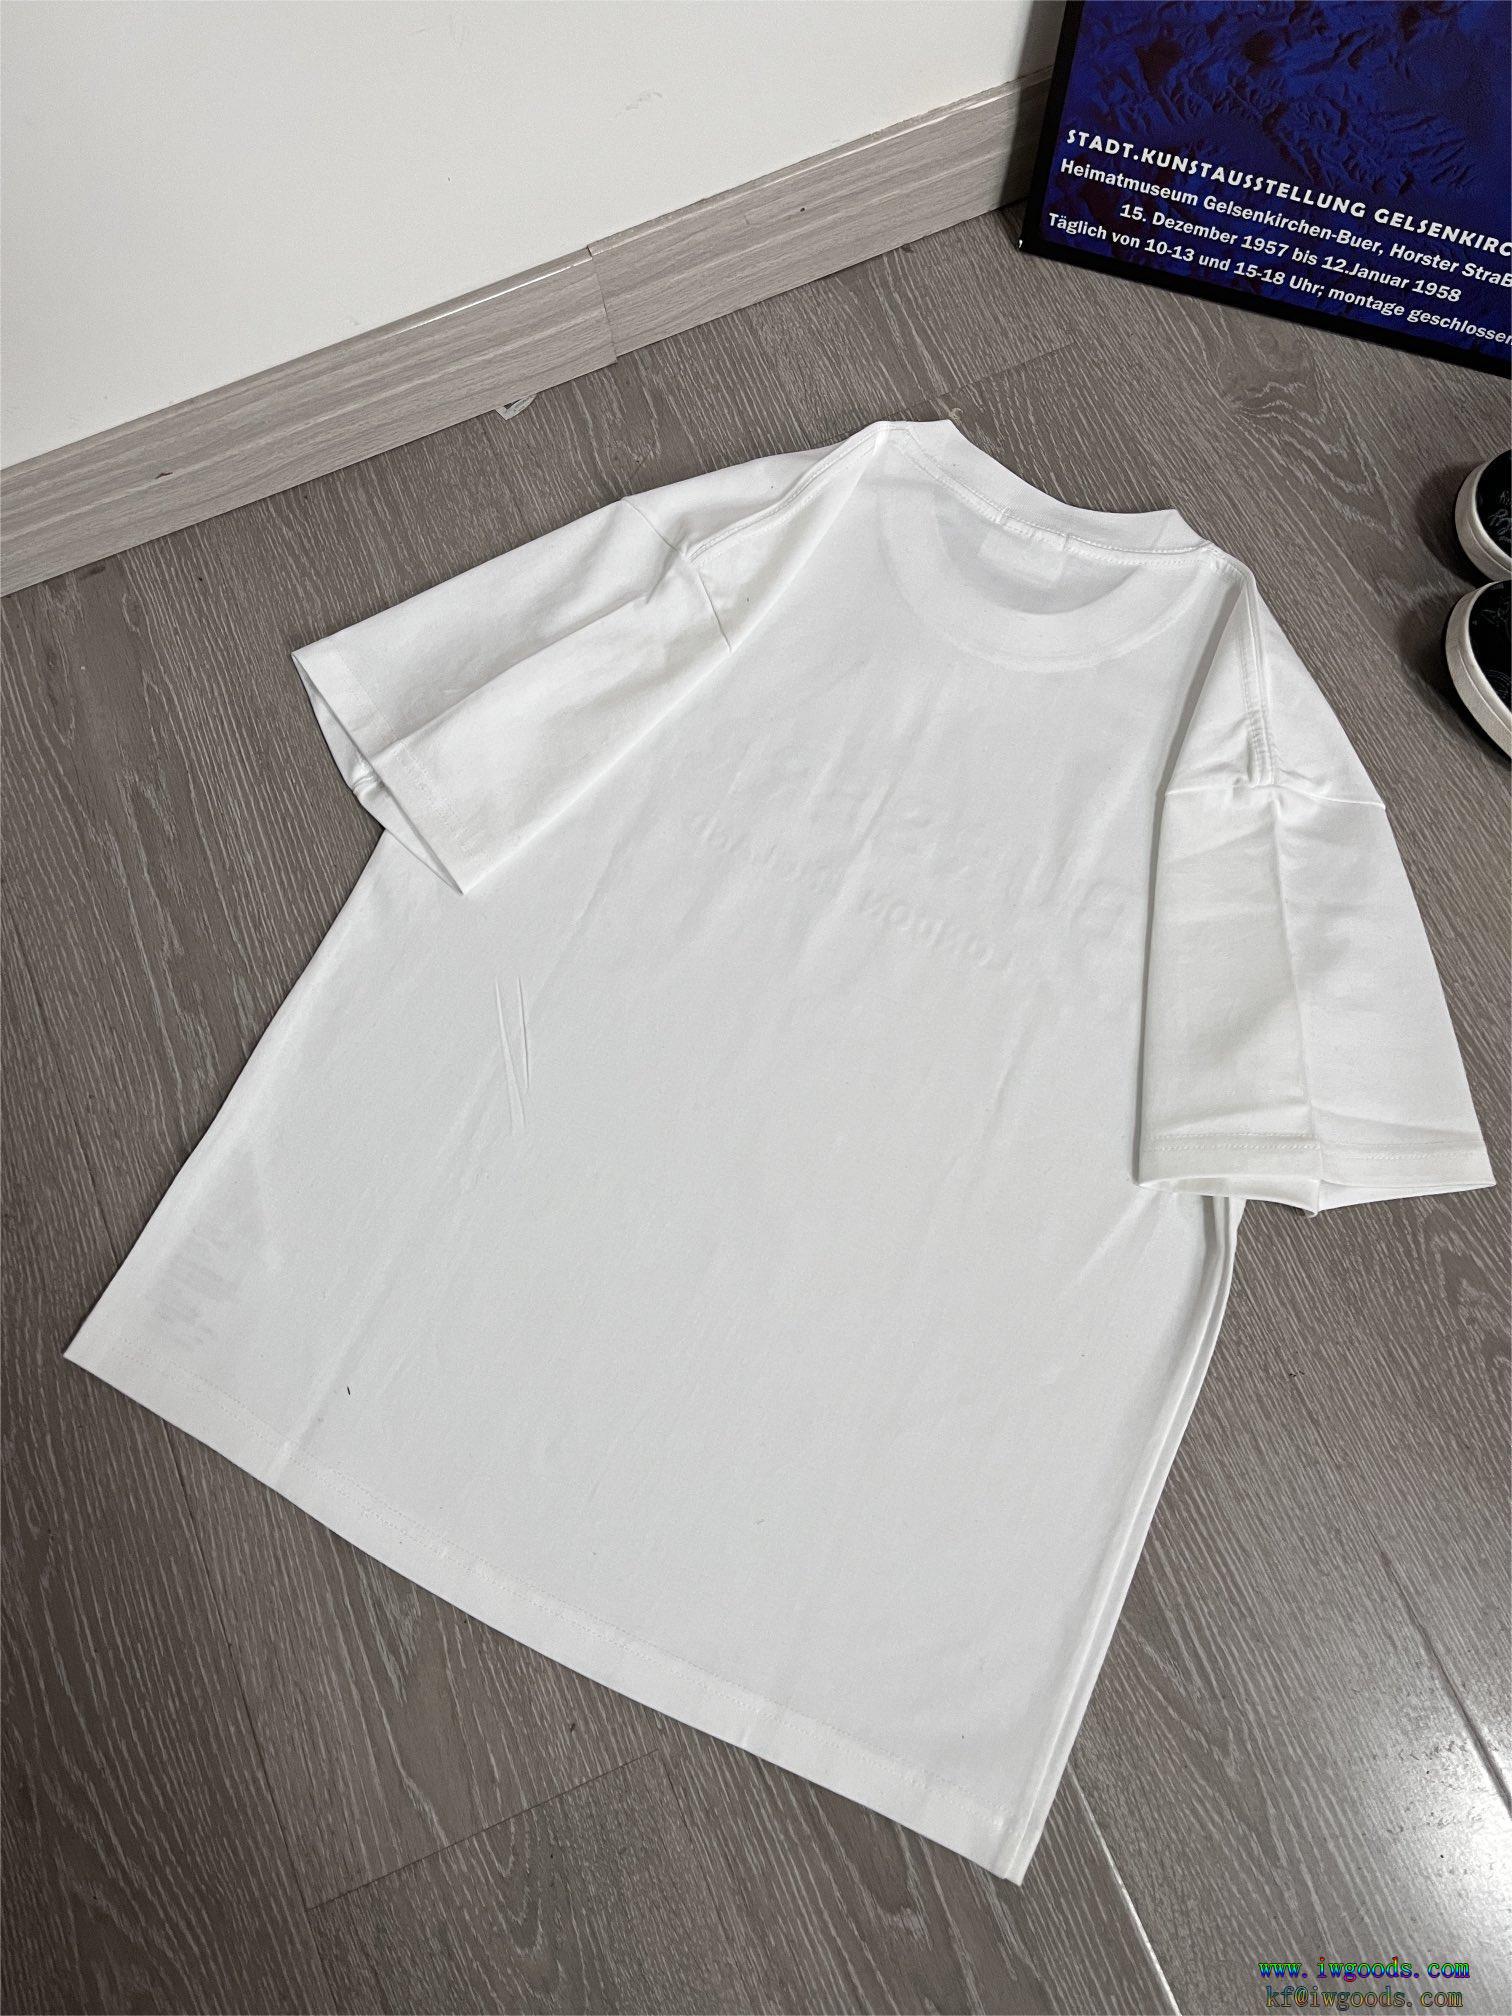 偽物 ブランドお得なアイテム今季のベスト新作バーバリーBURBERRY半袖Tシャツ